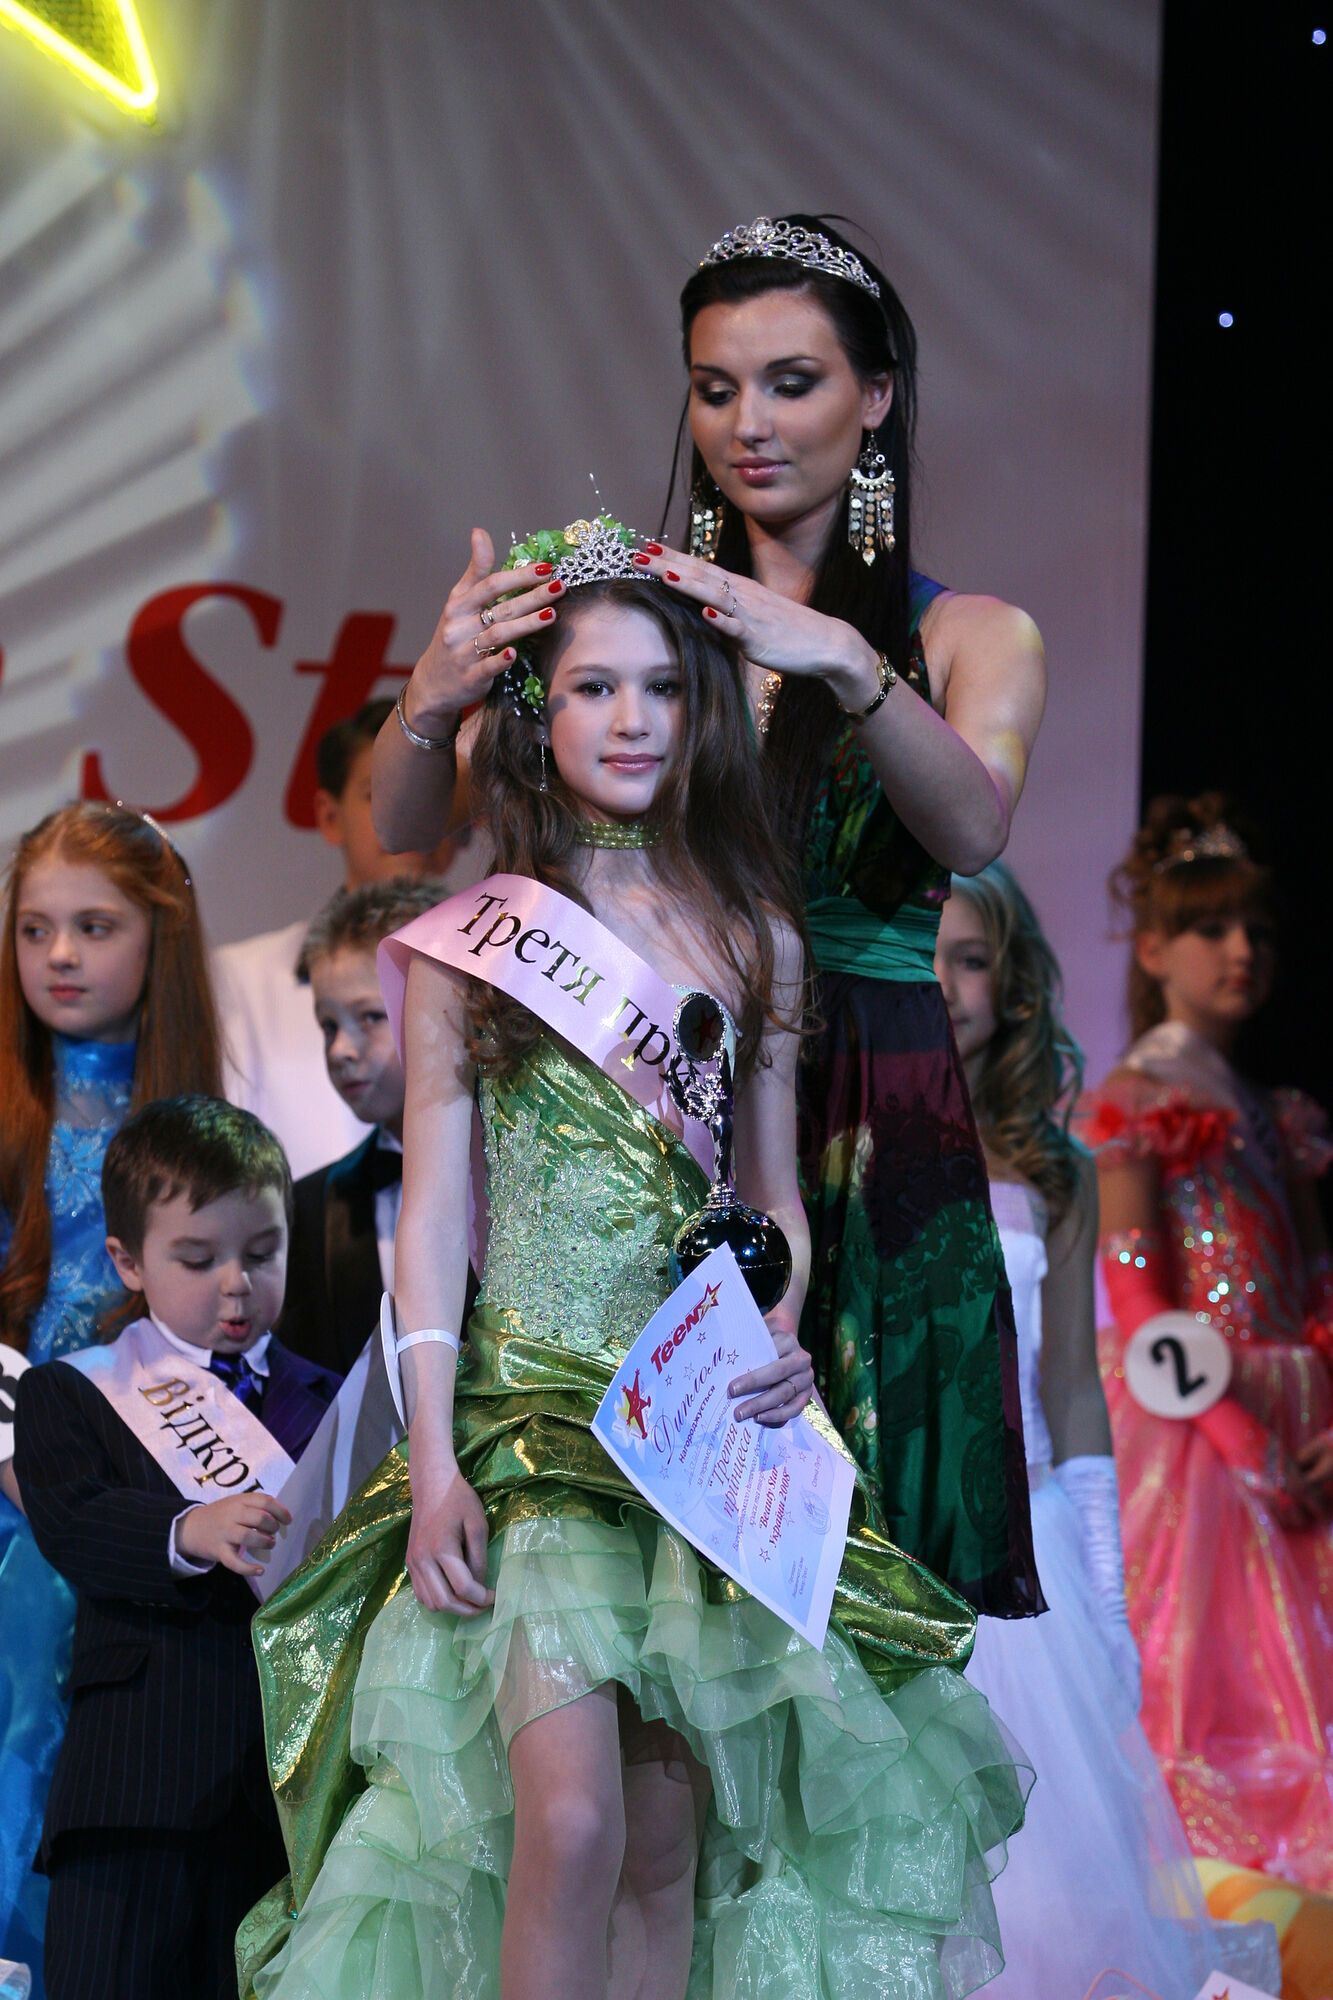 "World's Beauty Star" збере дітей з 20 країн світу